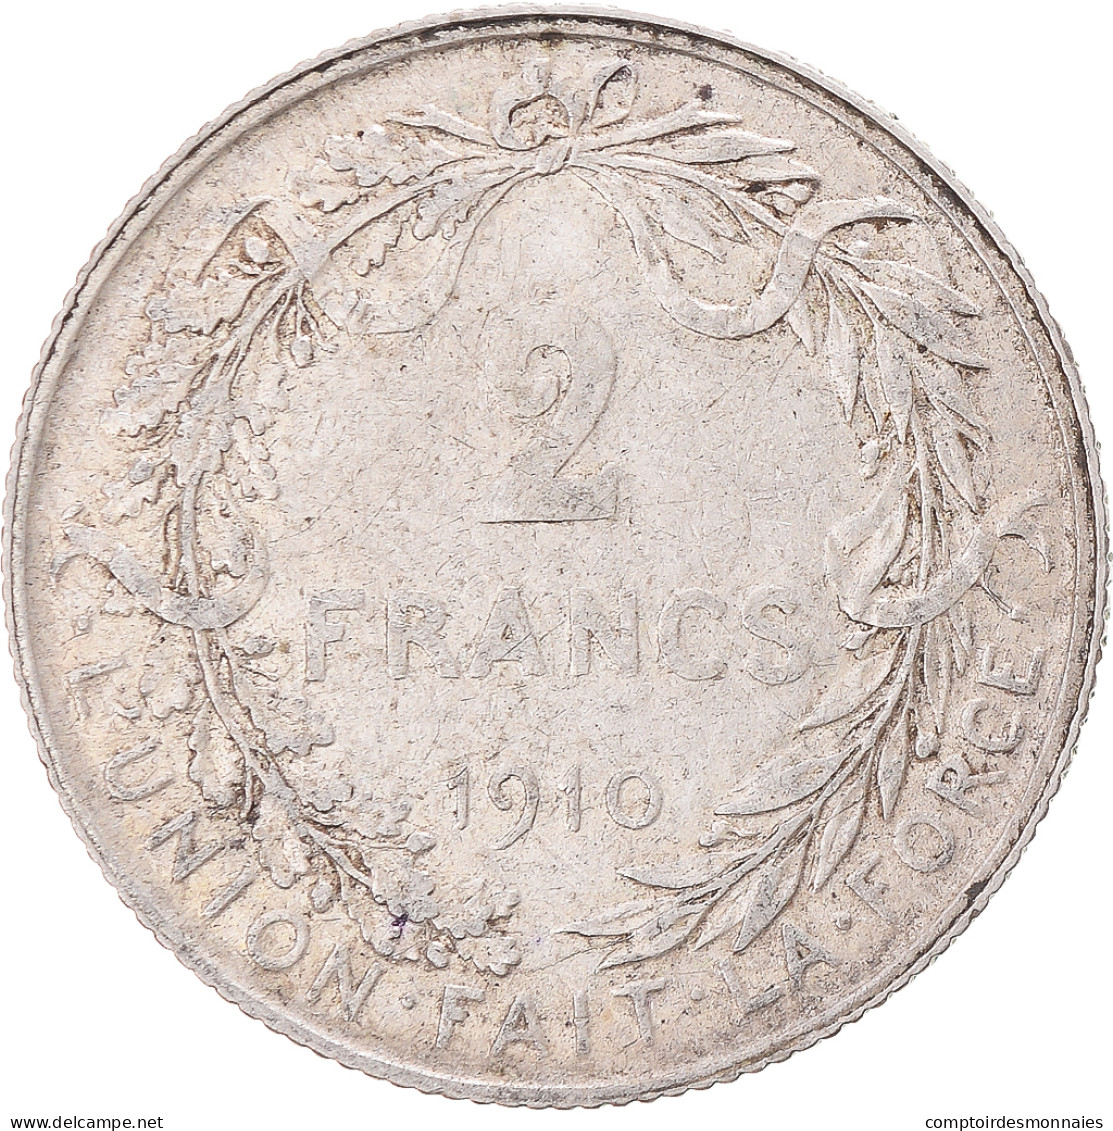 Monnaie, Belgique, 2 Francs, 2 Frank, 1910, TB+, Argent, KM:74 - 2 Francos